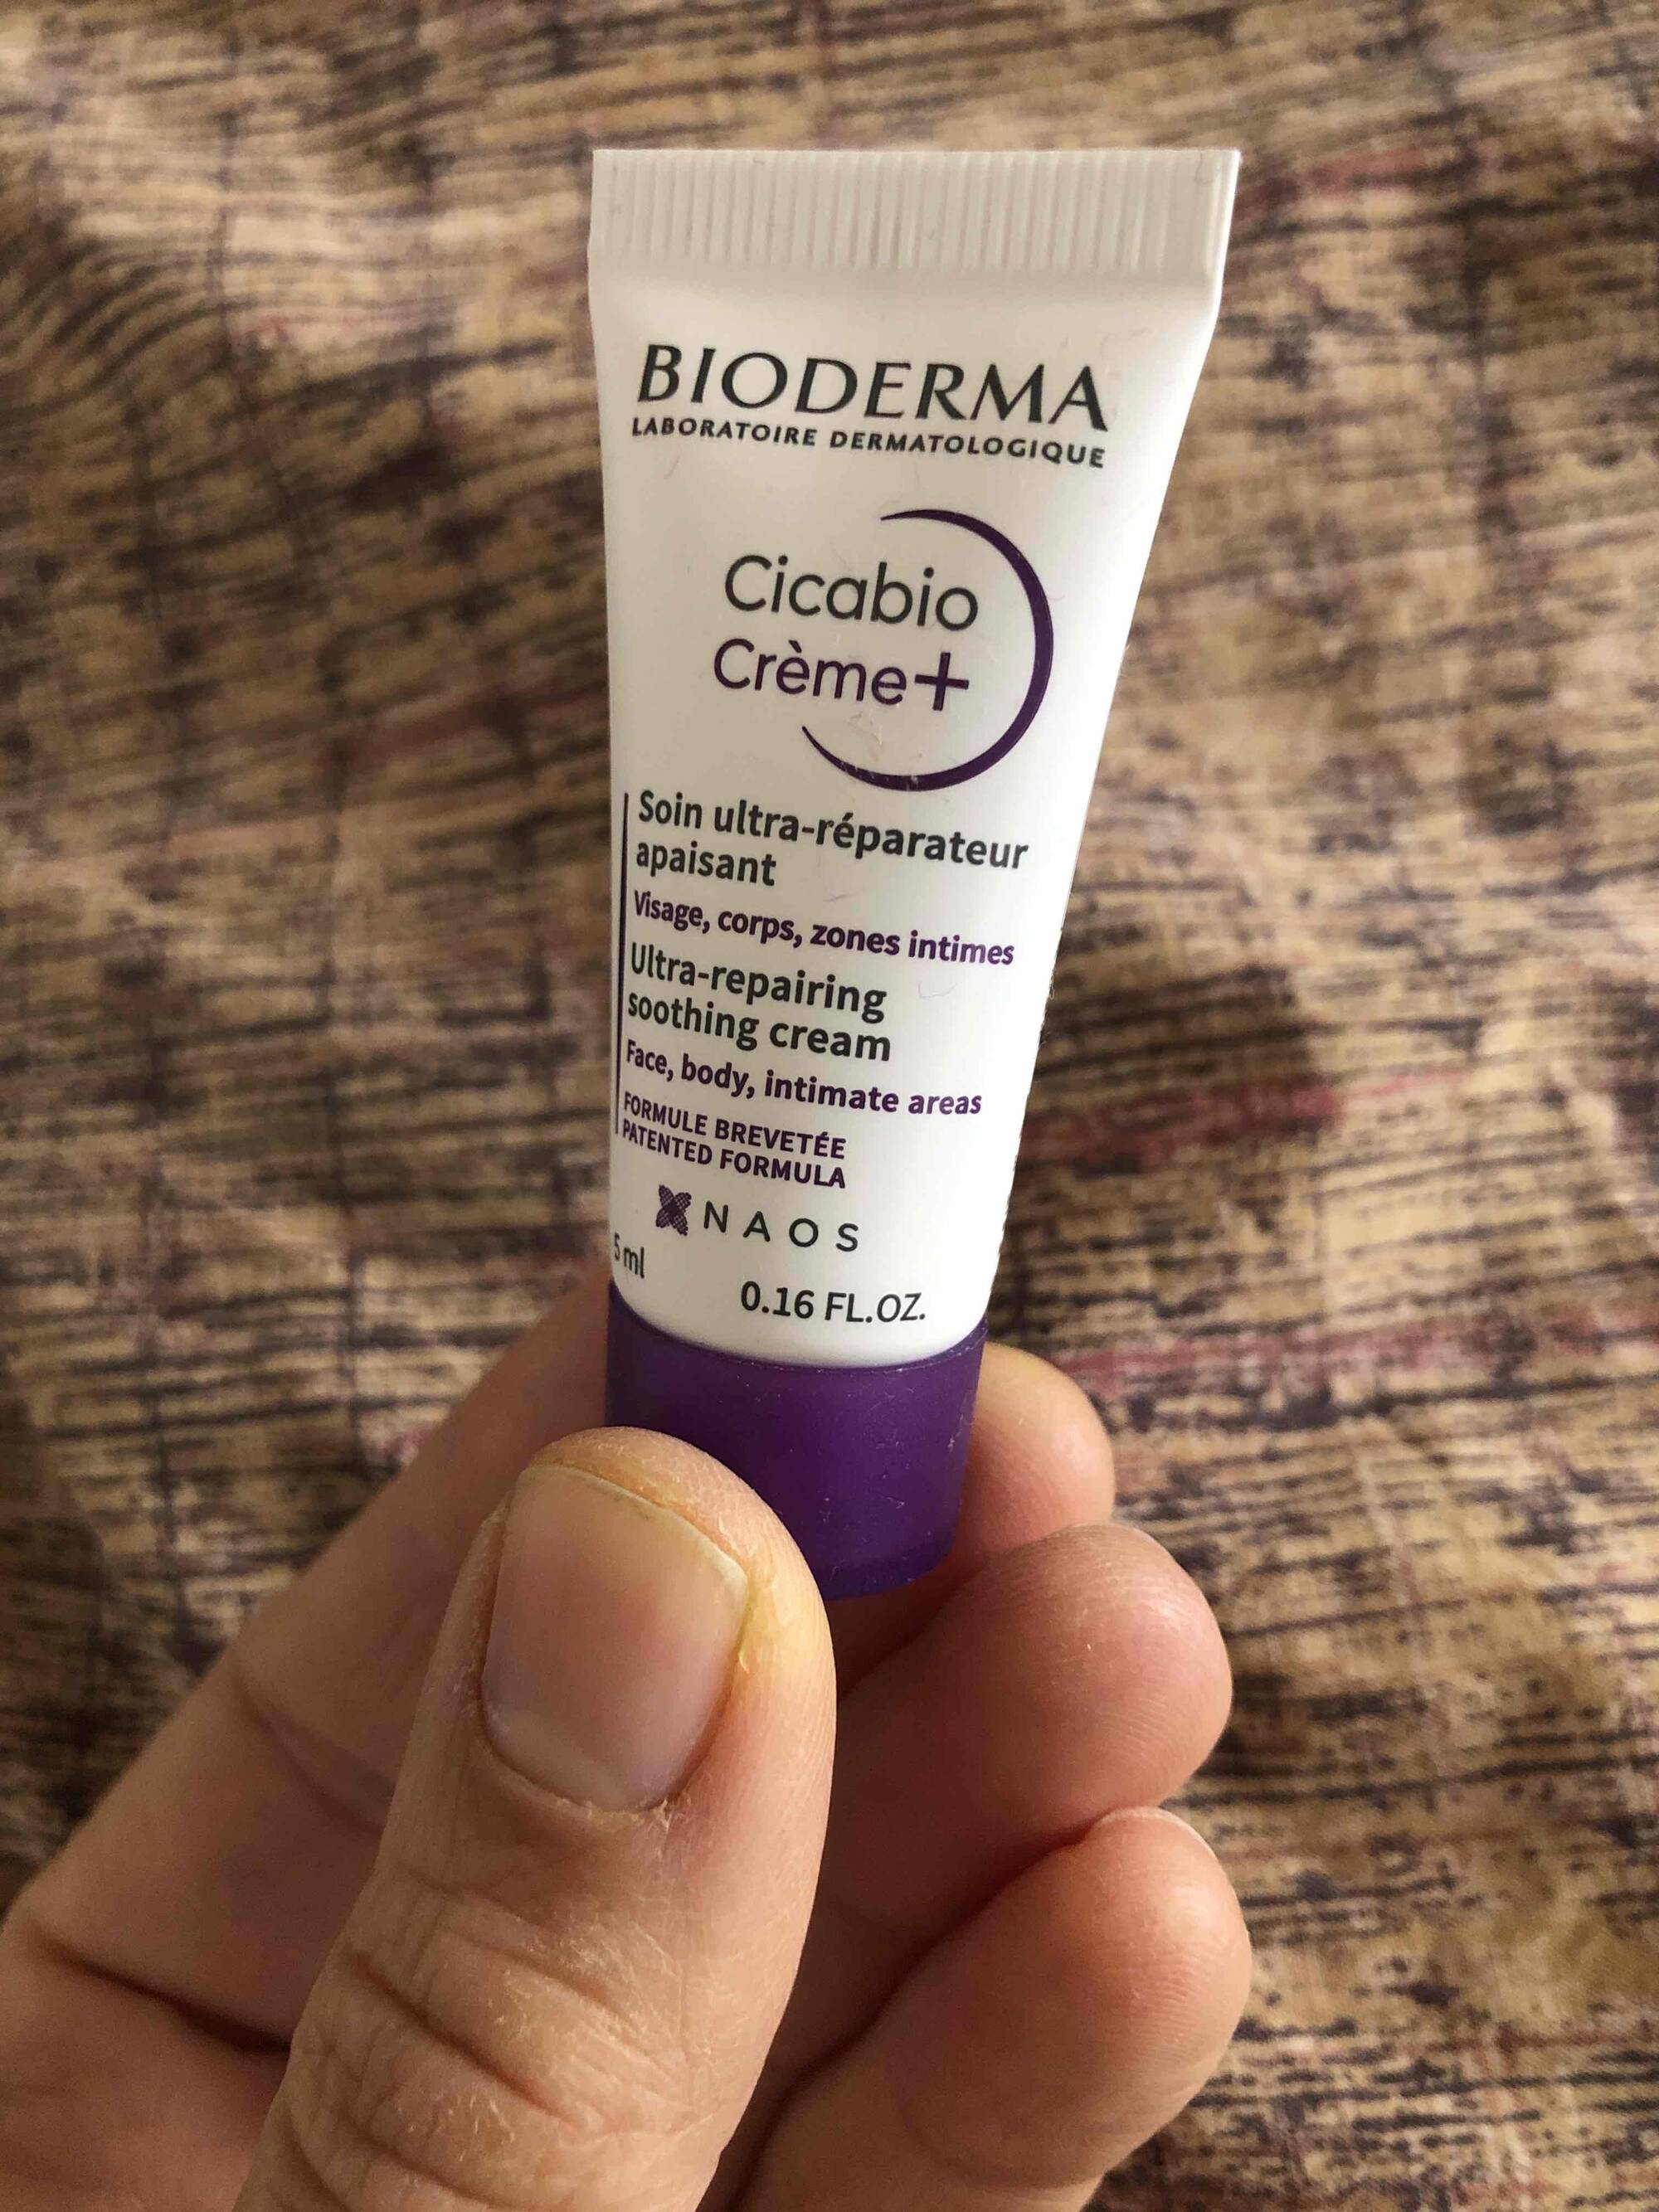 BIODERMA - Cicabio crème+ - Soin ultra réparateur apaisant